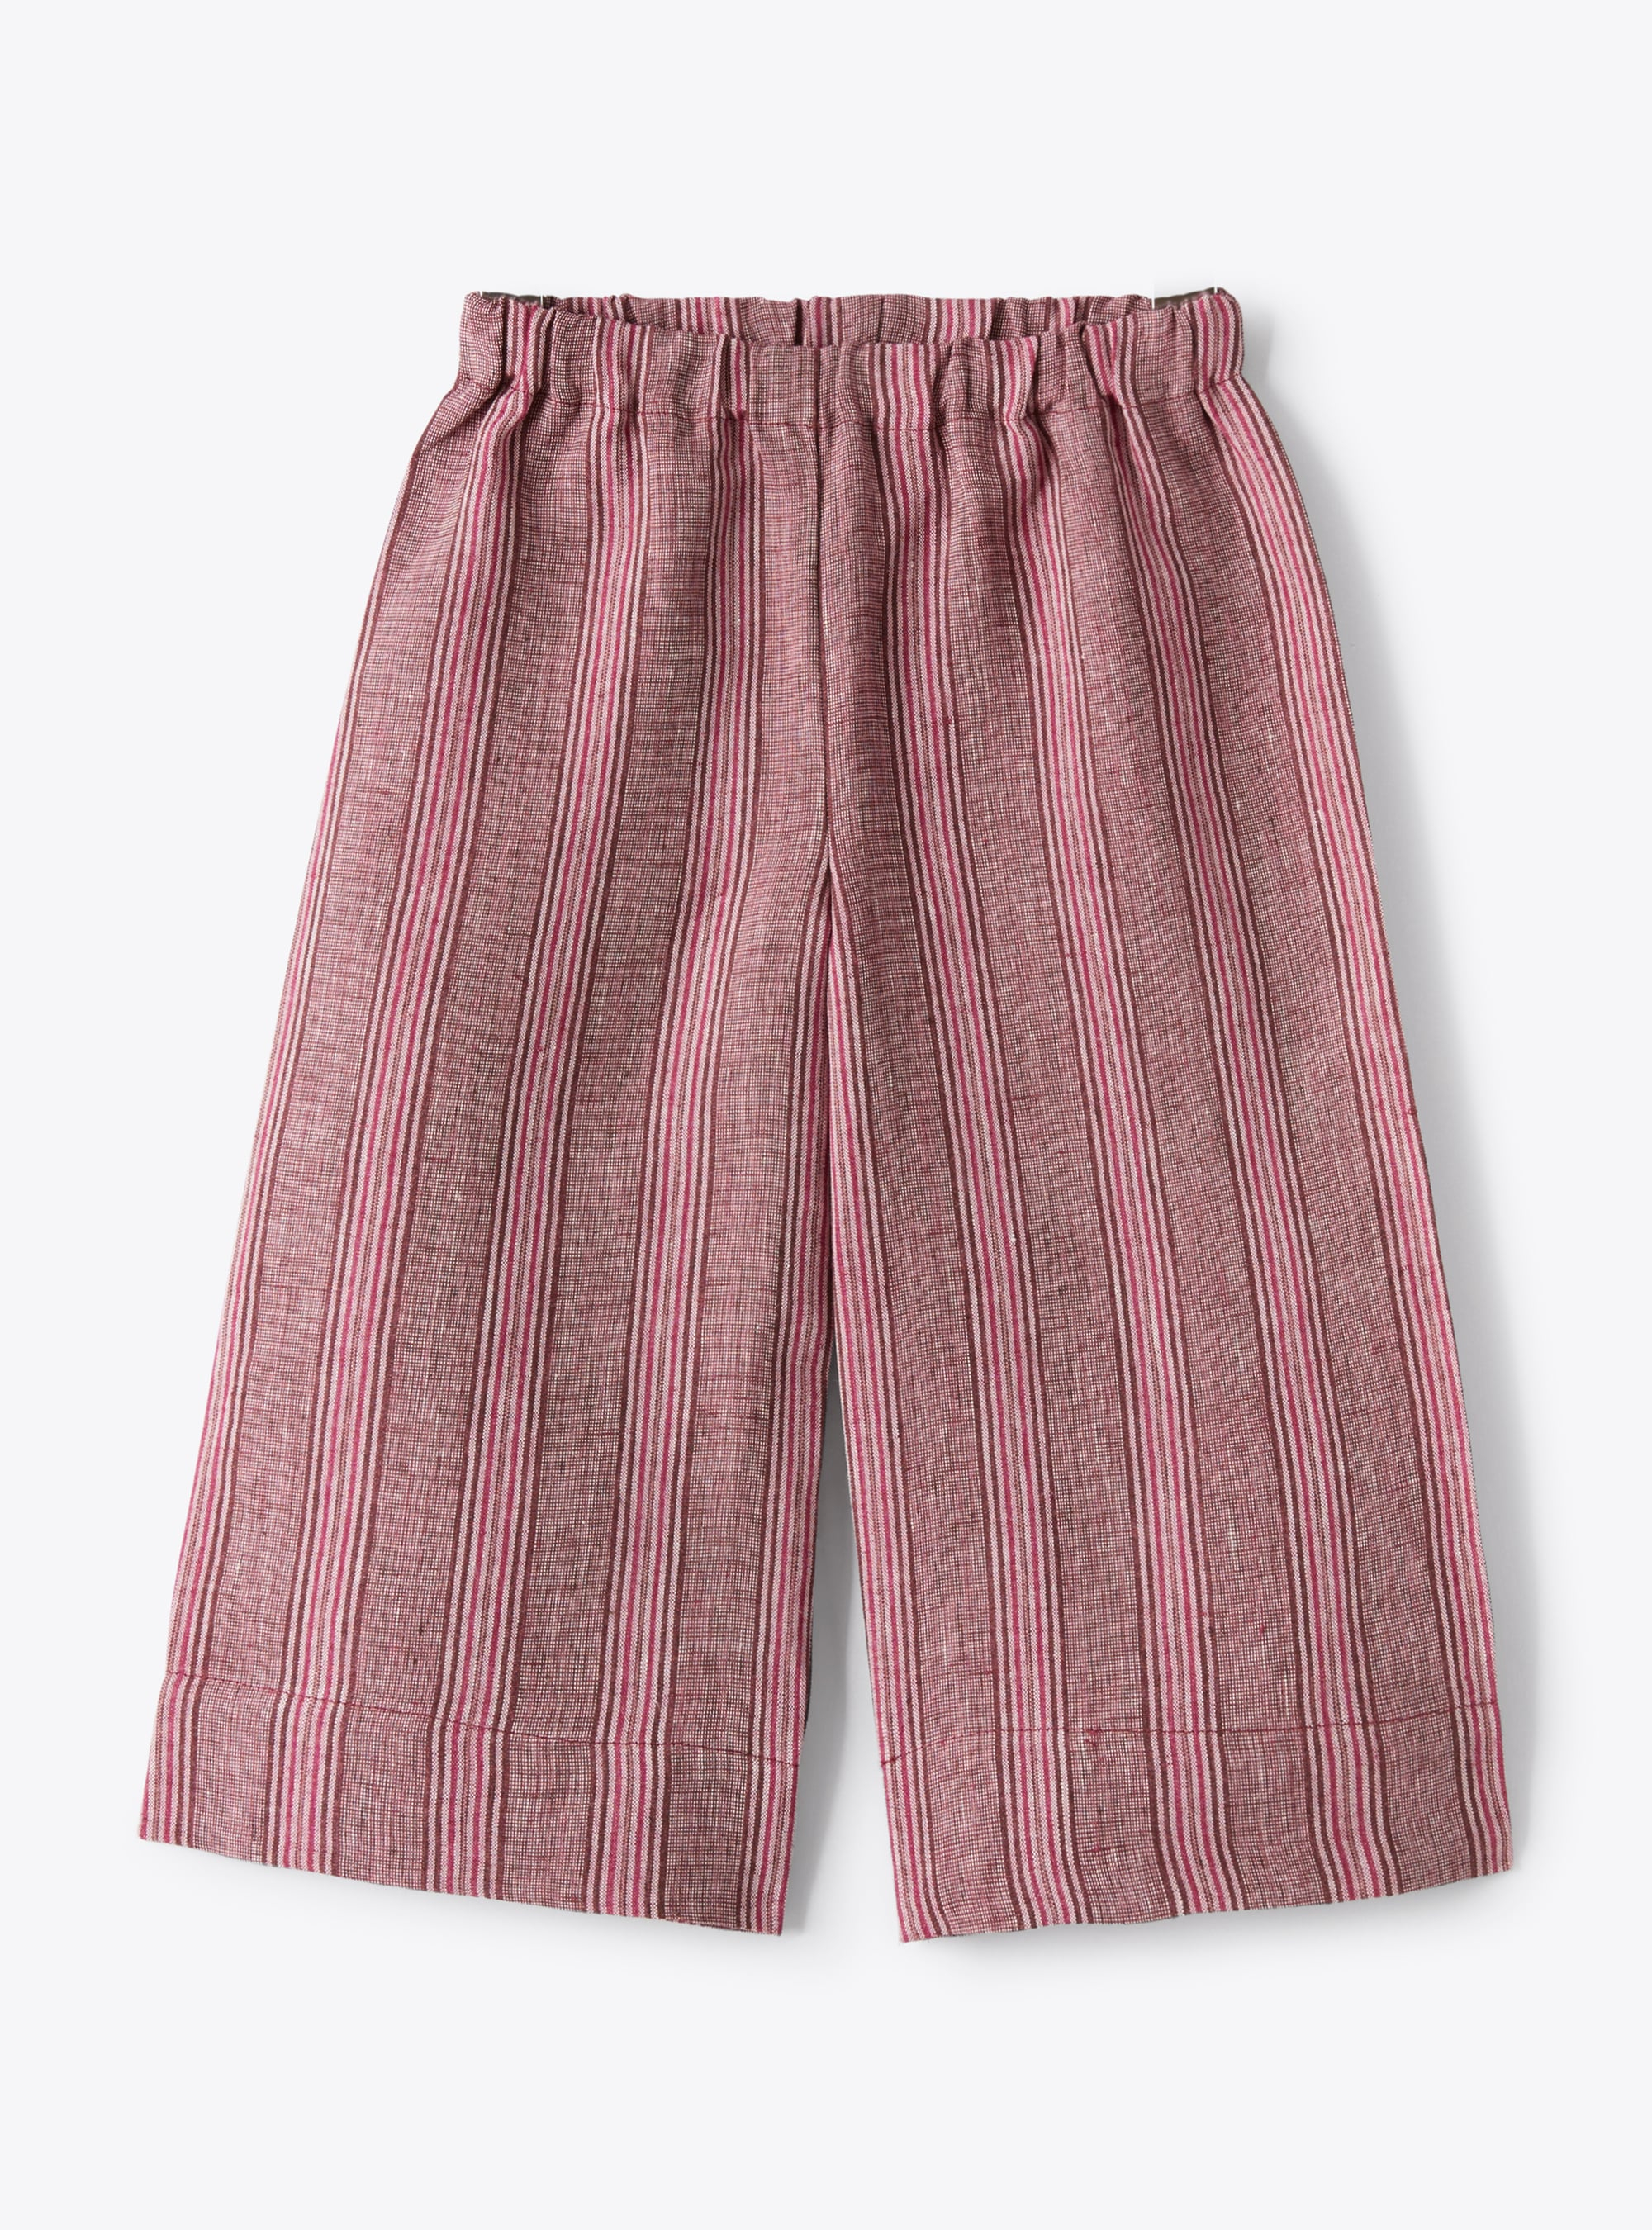 Pantalon capri en lin chiné à rayures violet oignon rouge - Pantalons - Il Gufo